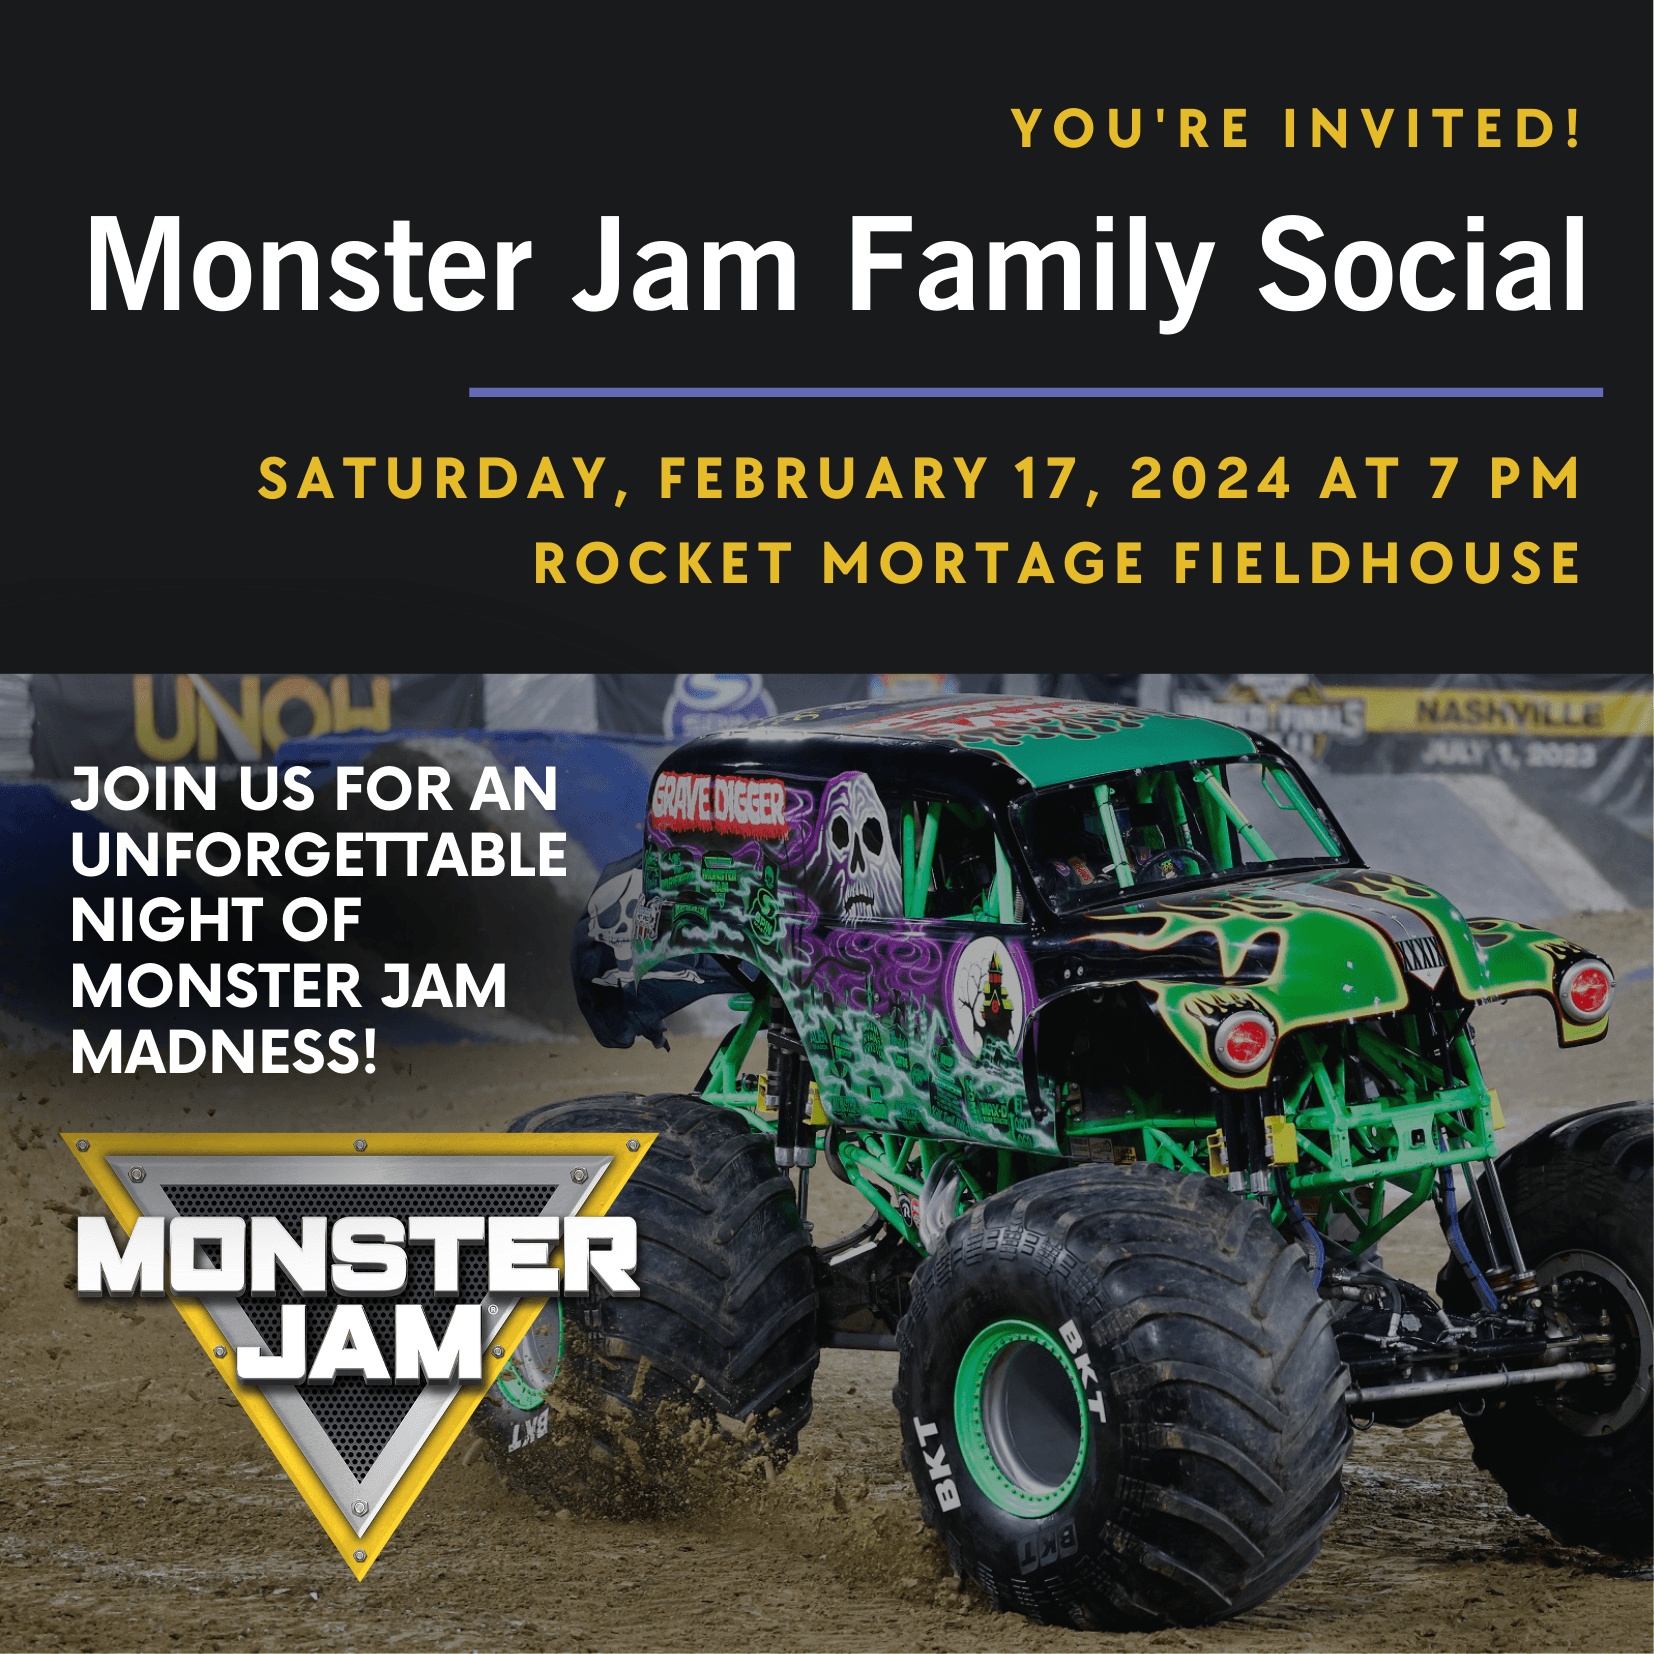 Join us for a Monster Jam Family Social Event